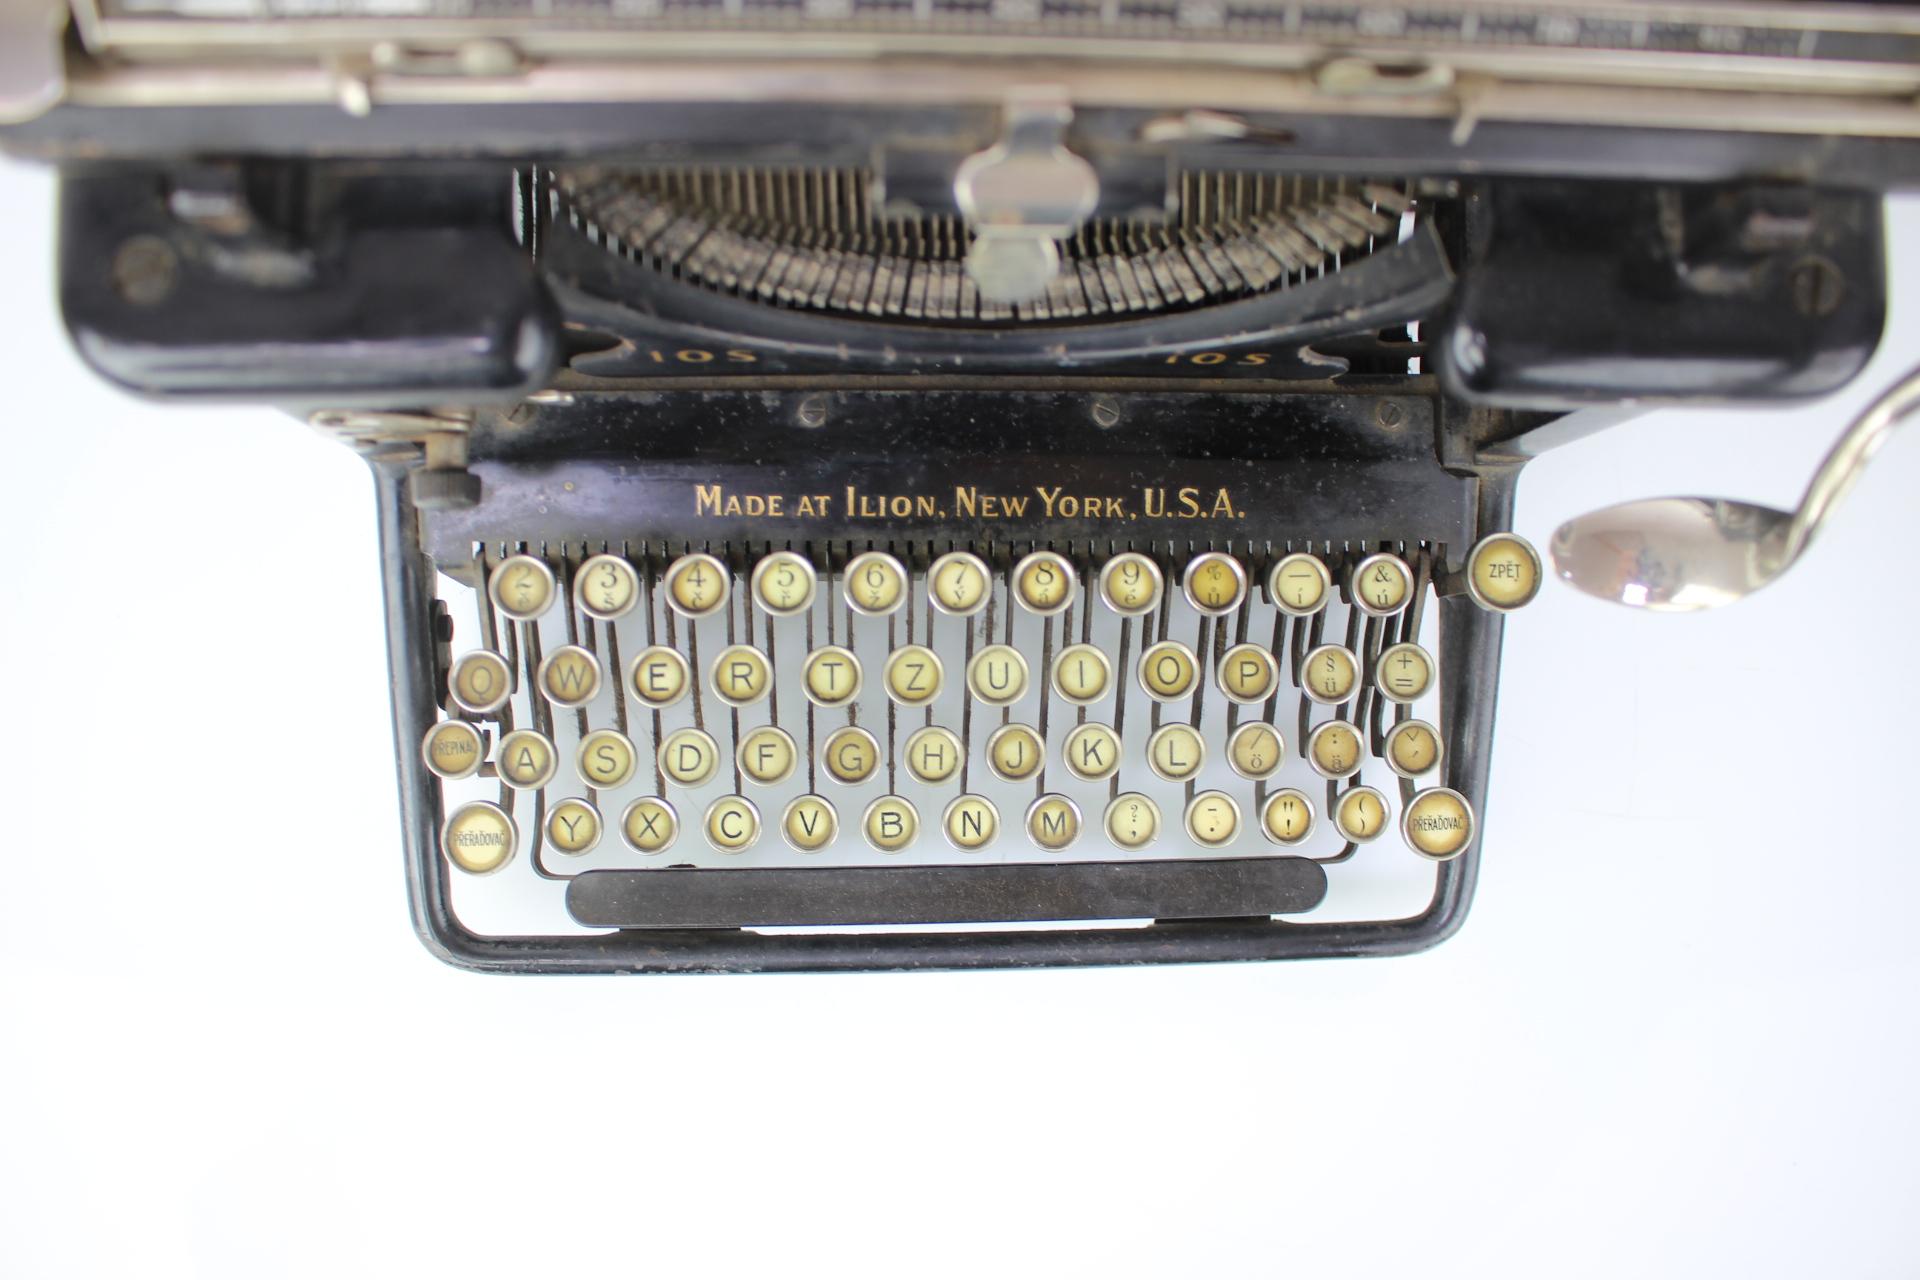 remington typewriter 1920